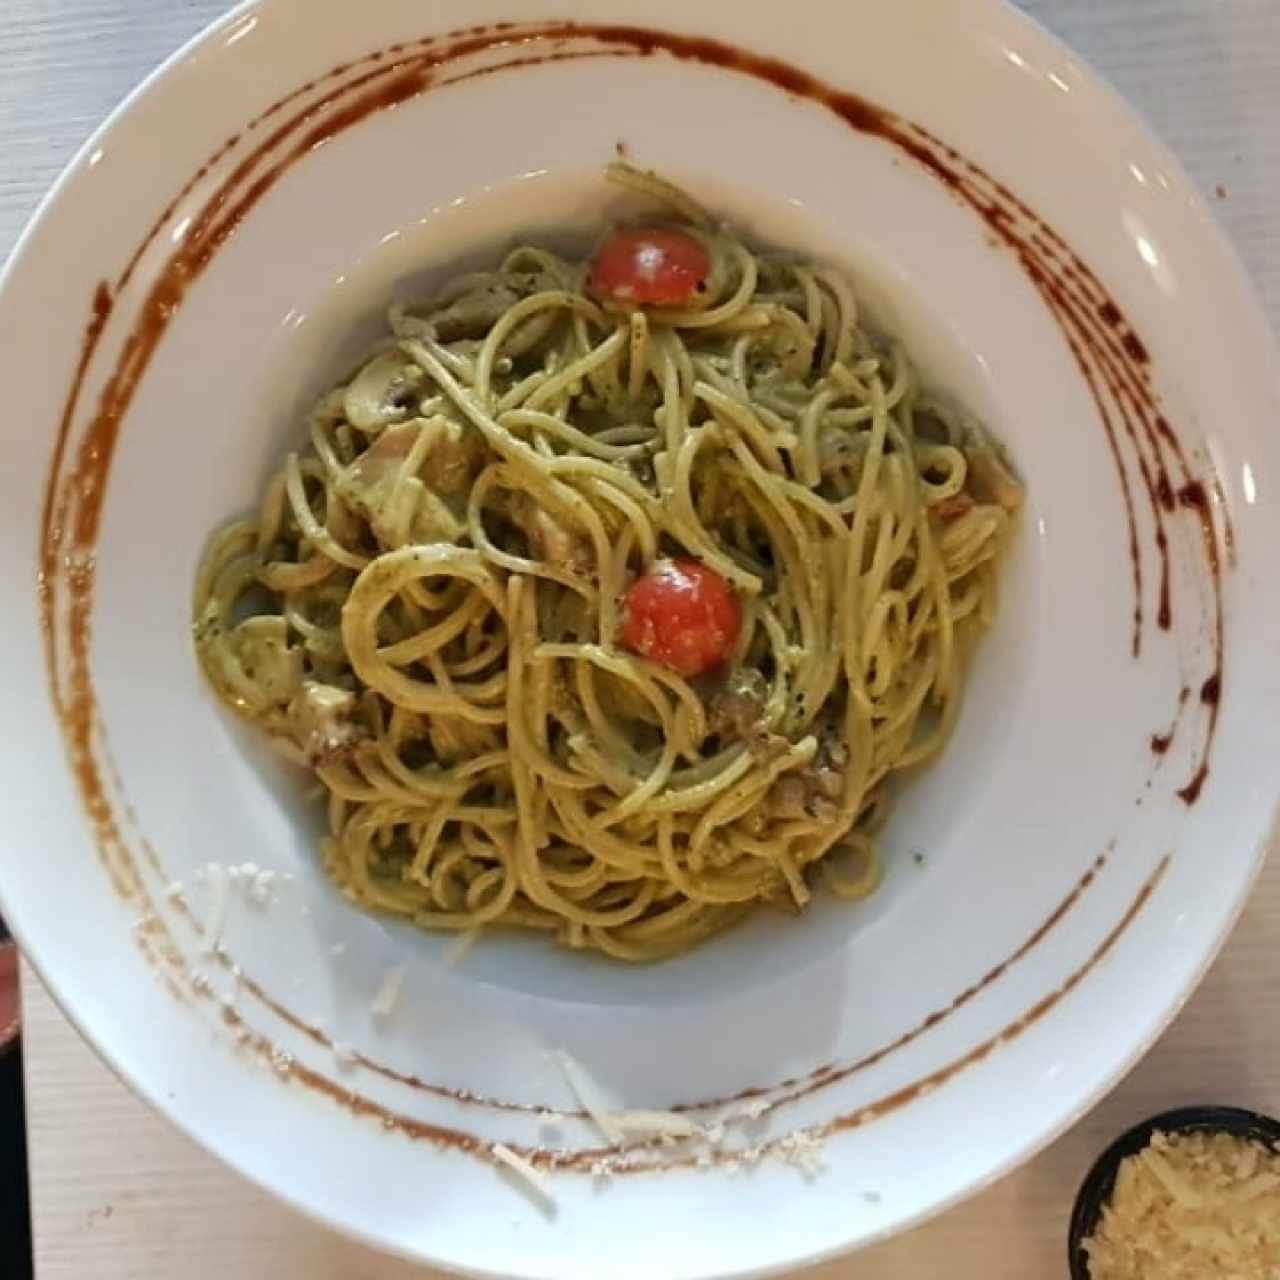 spaghetti gliten free con mariscos